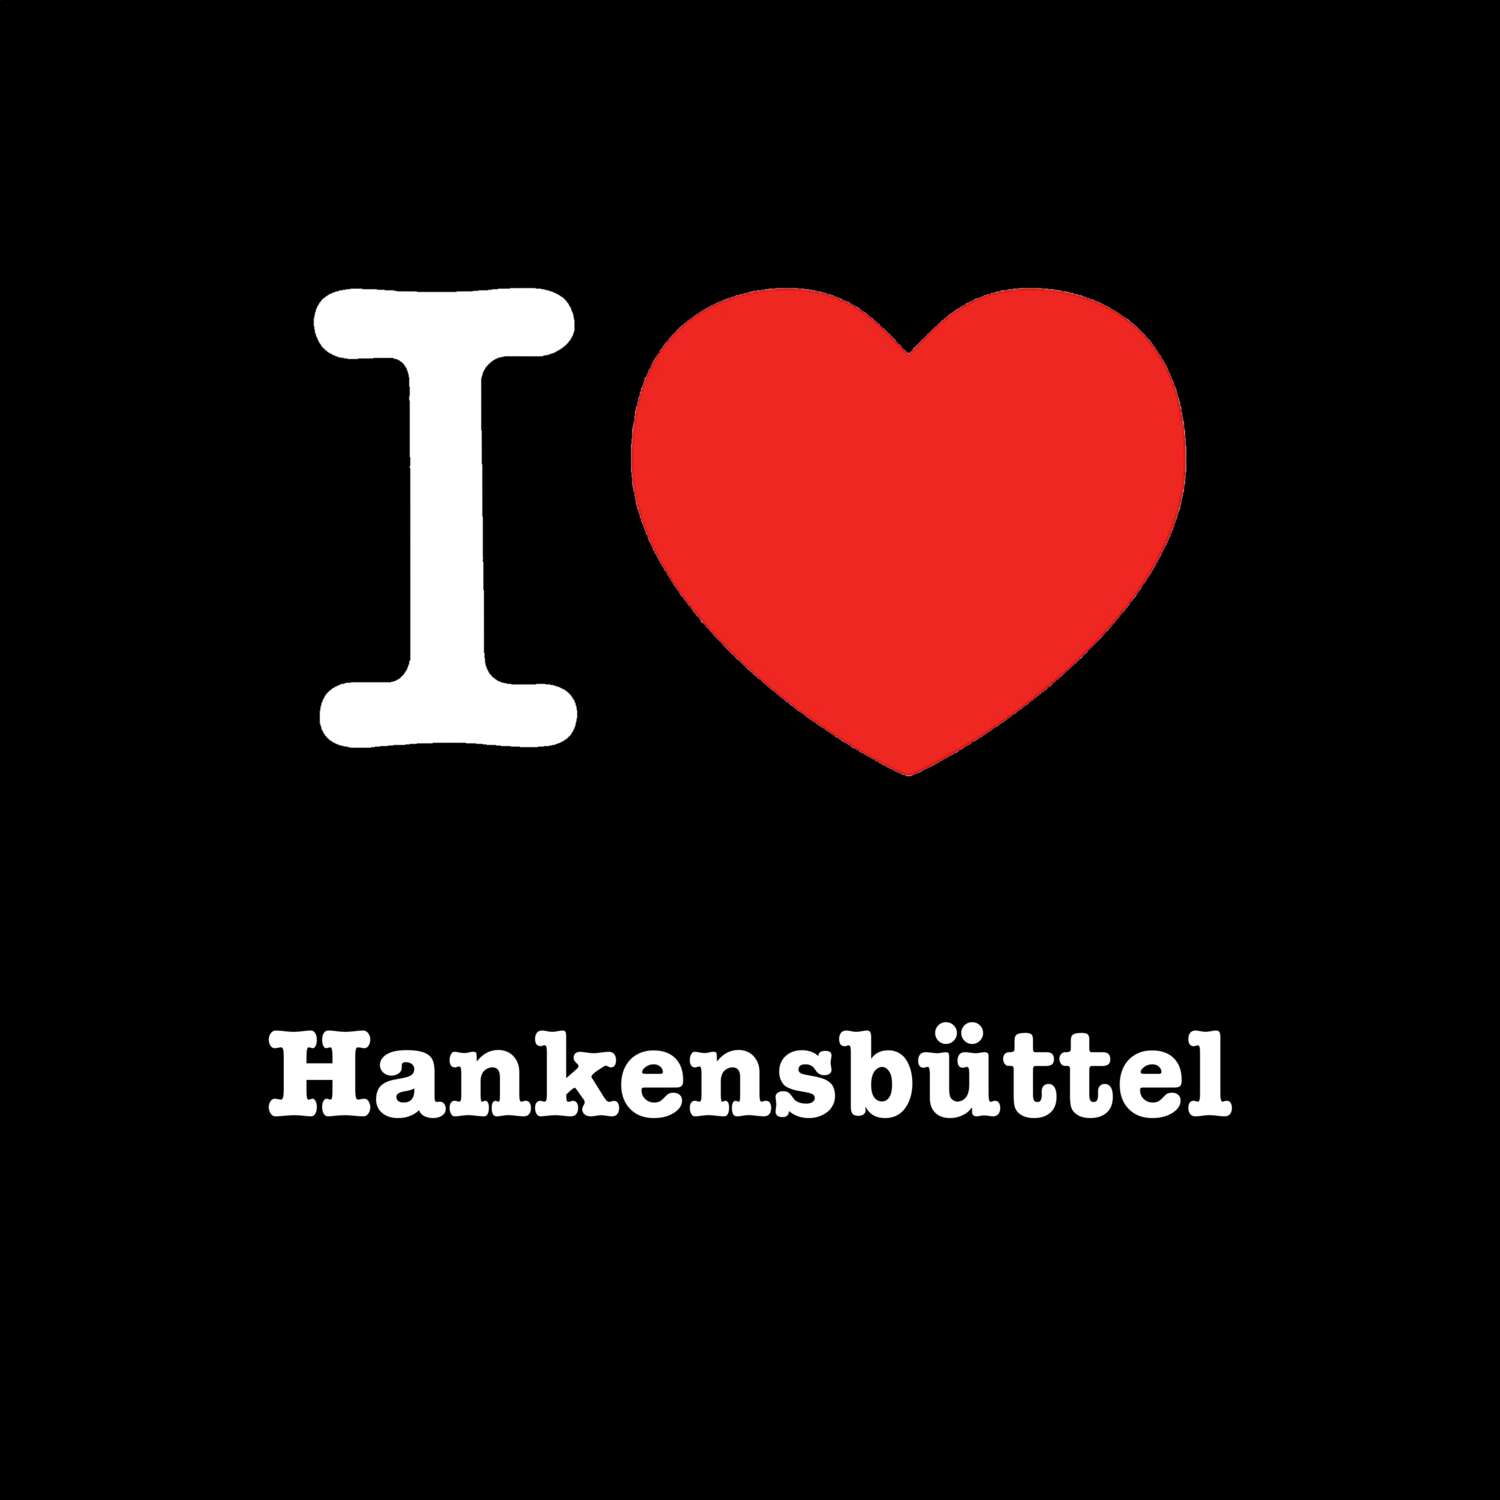 Hankensbüttel T-Shirt »I love«